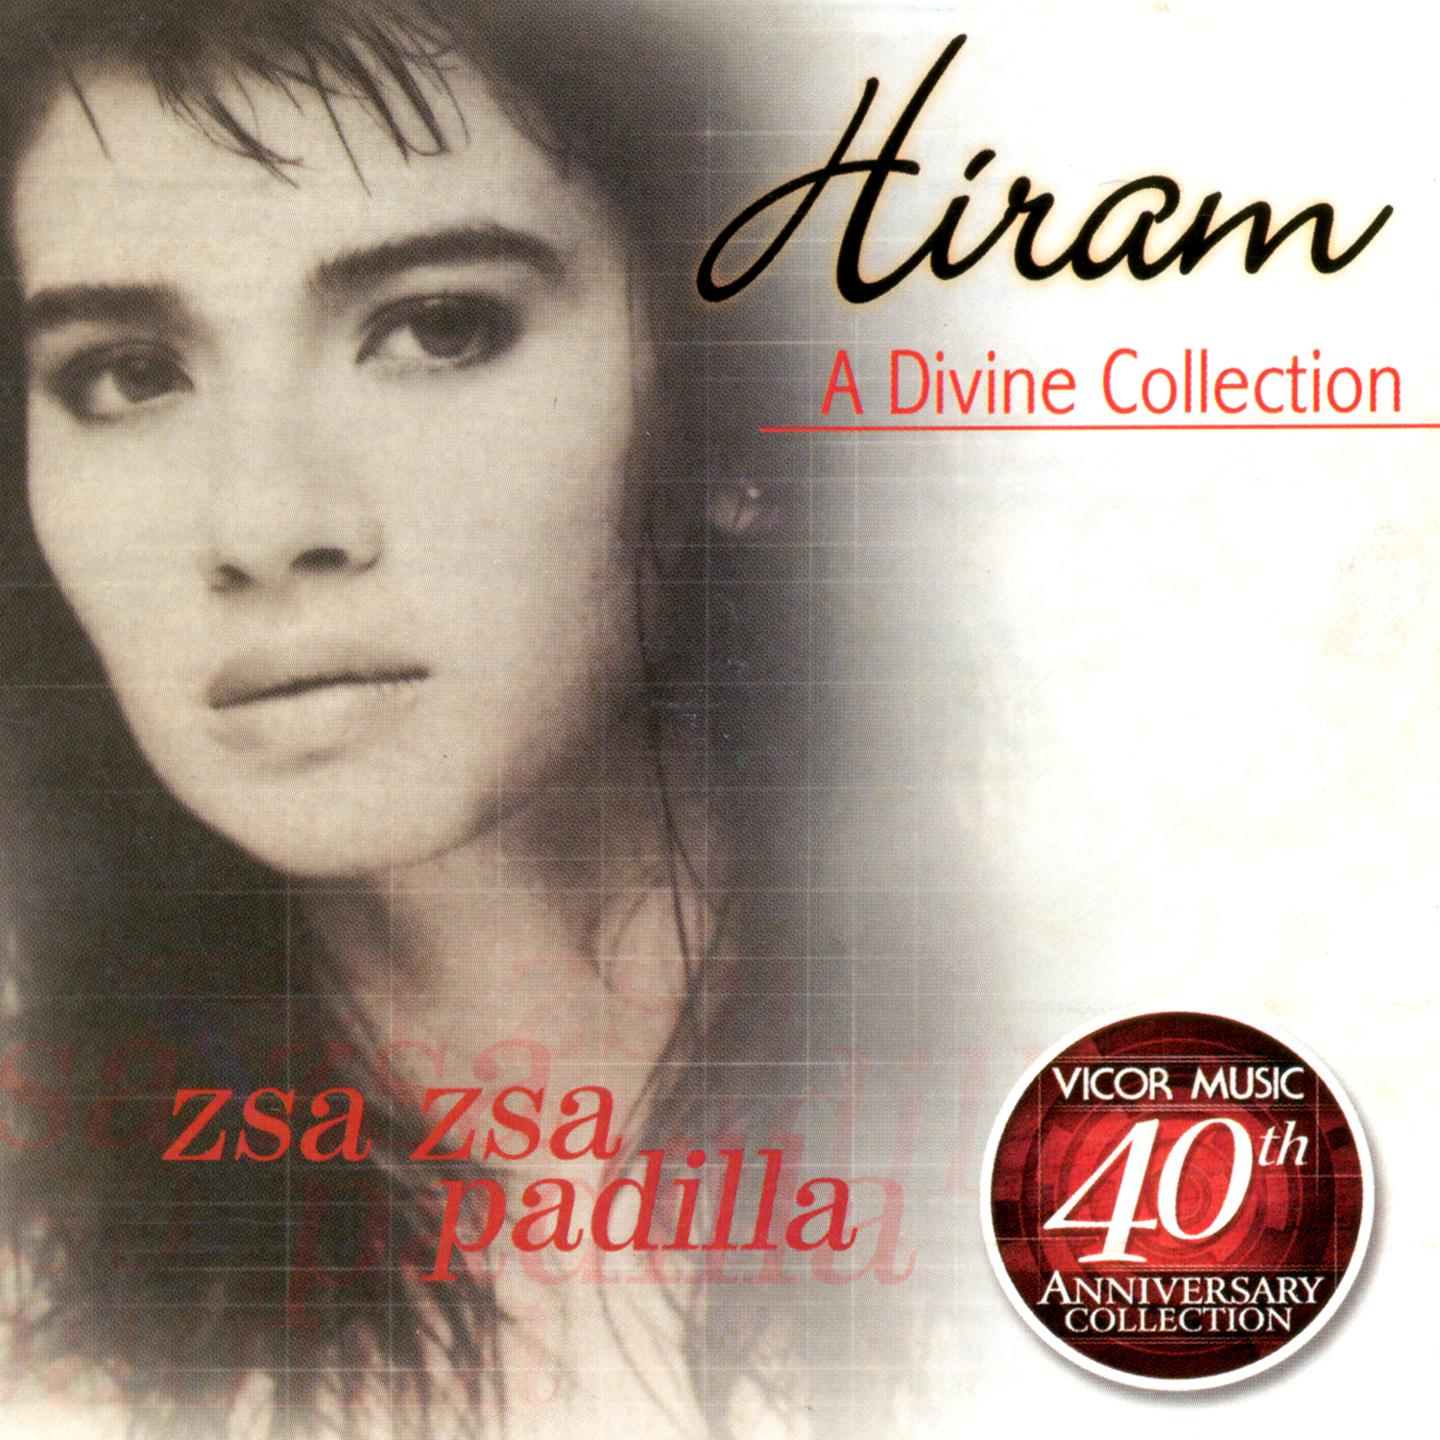 Hiram A Divine Collection (Vicor 40th Anniversary Collection)